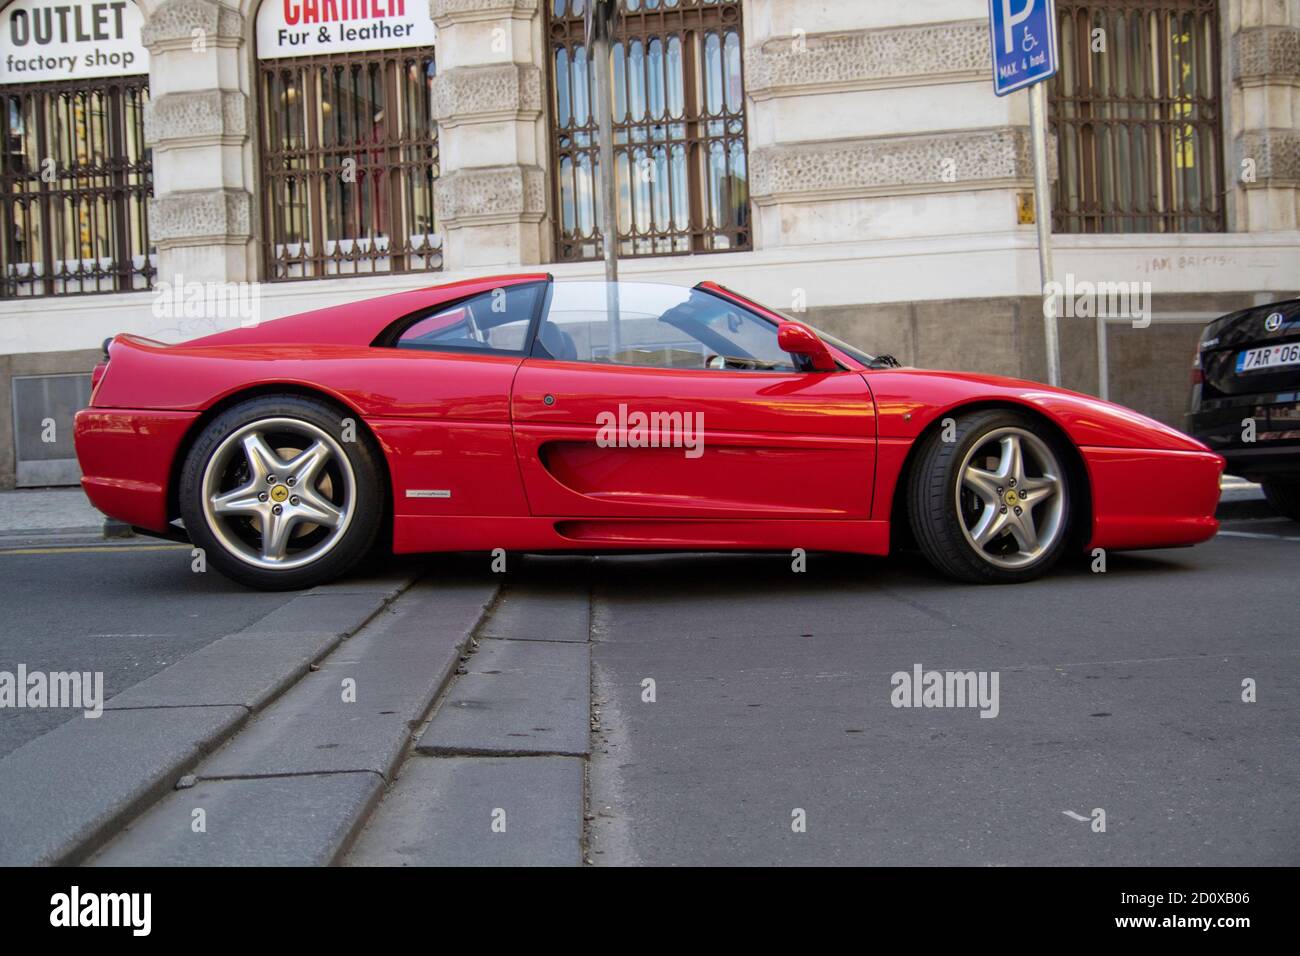 Rot geparkten Ferrari F355 gts Cabrio in der berühmten roten farbe ferarri. Die Typenbezeichnung F355 steht für 3500cc Hubraum und fünf Ventile p Stockfoto